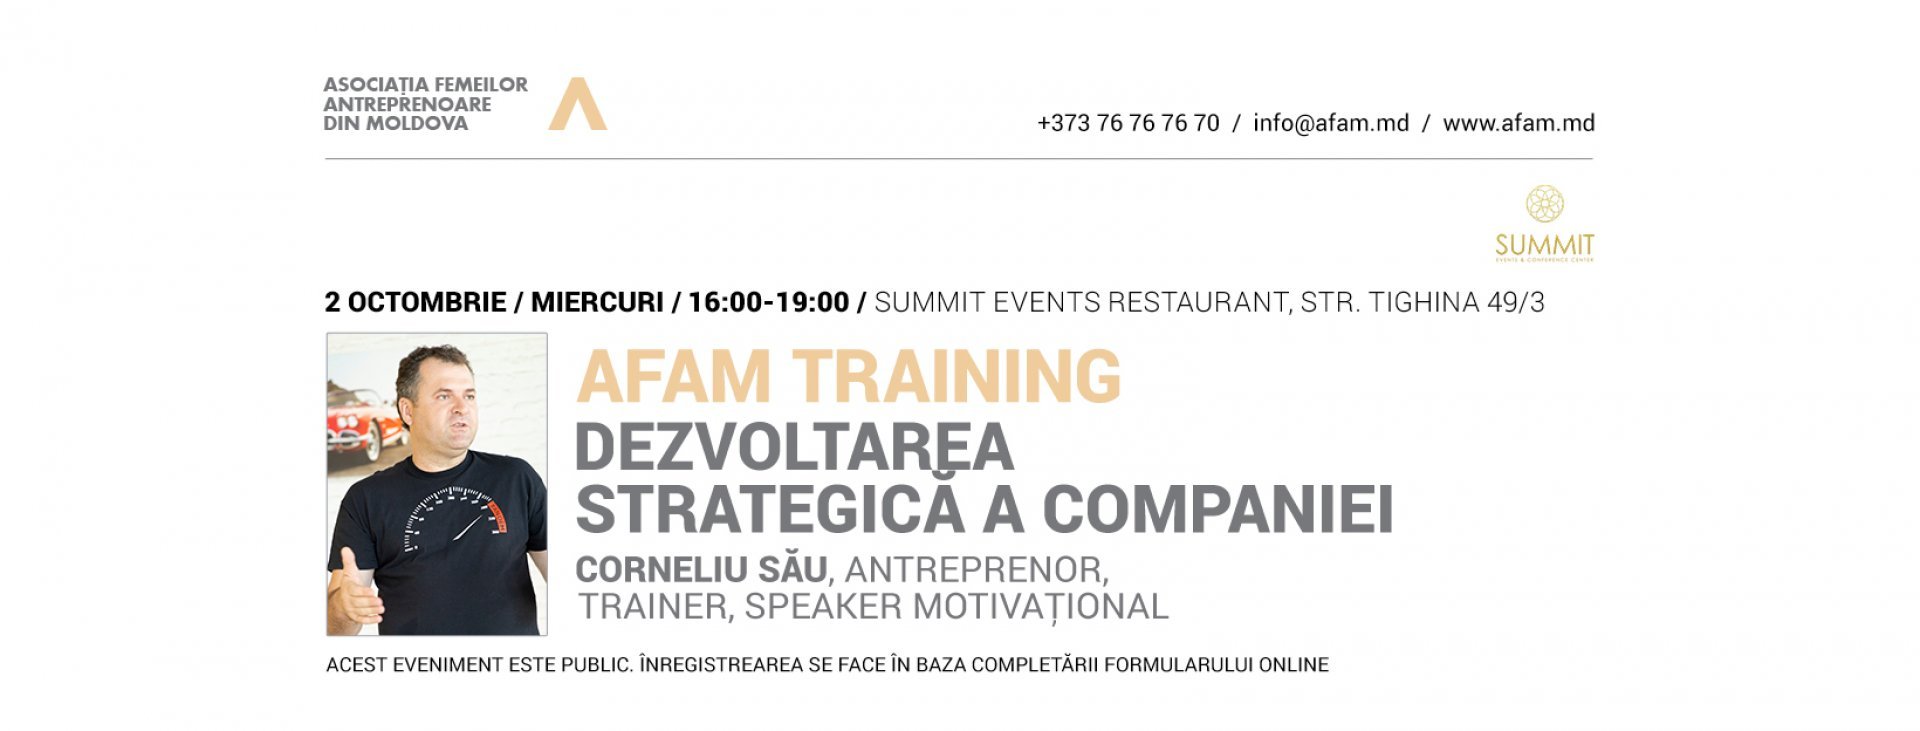 AFAM Training: Dezvoltarea strategica a companiei